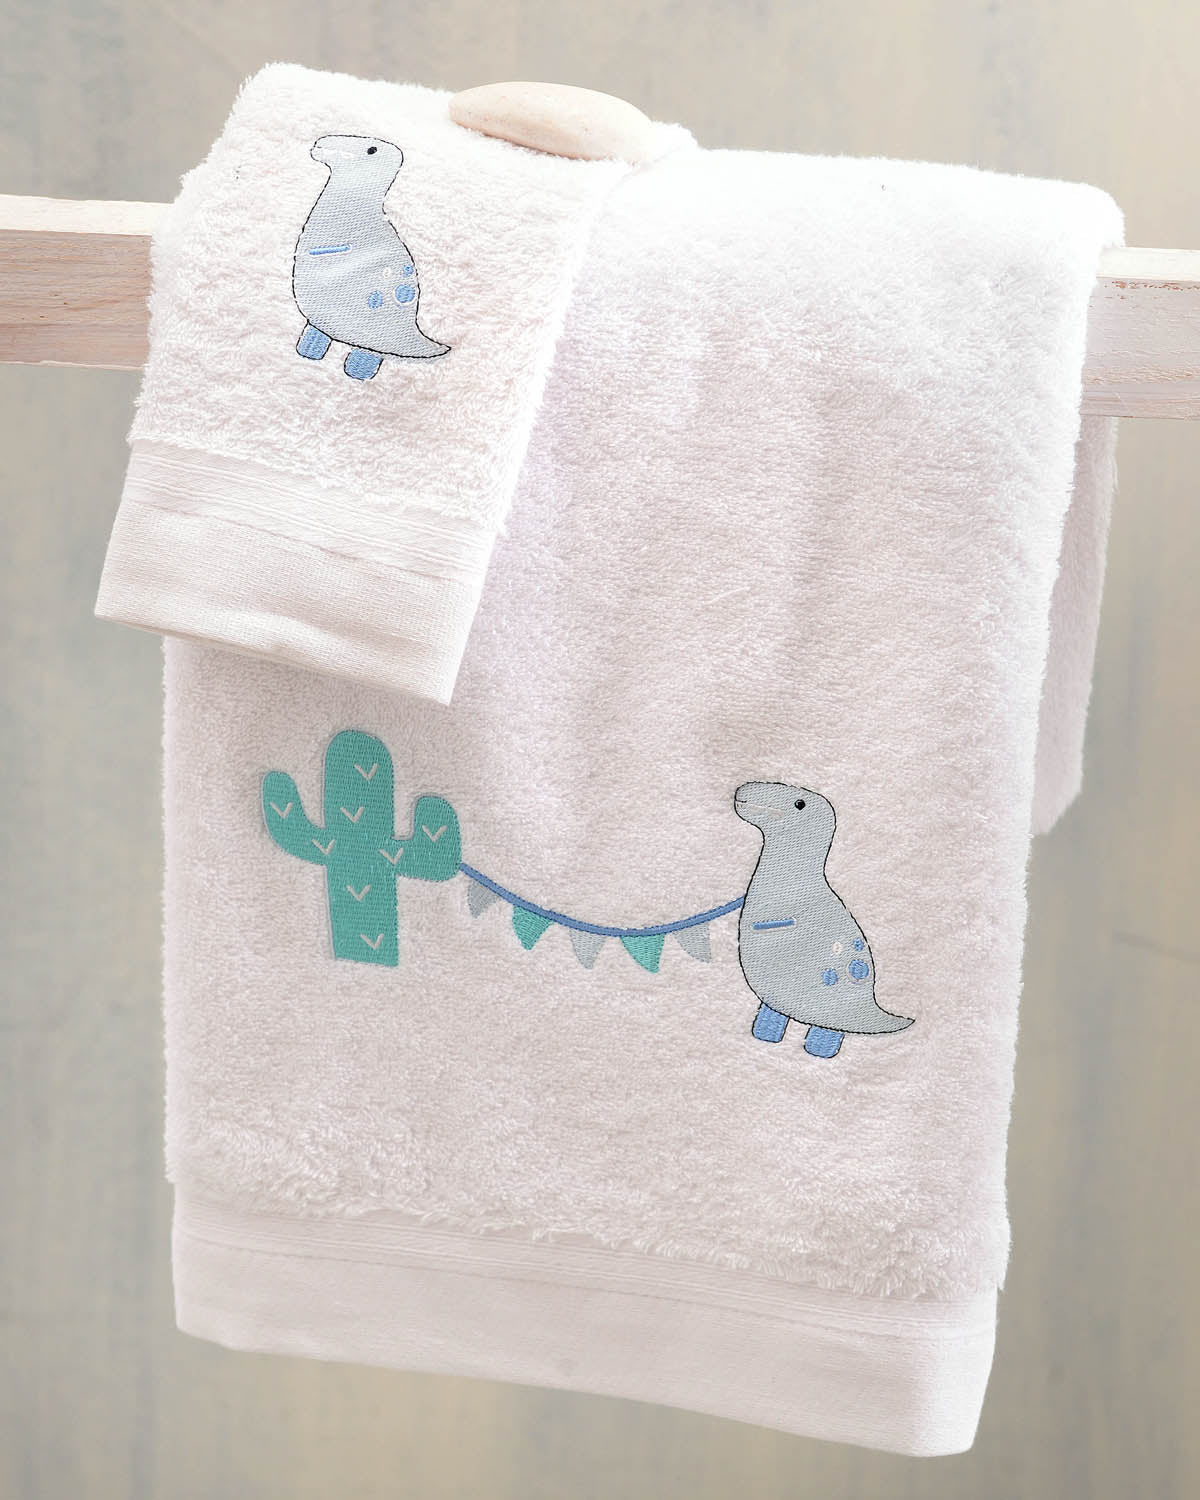 DIEGO Σιέλ - Σετ πετσέτες παιδικές 2 τεμ. από την εταιρεία Rythmos Home